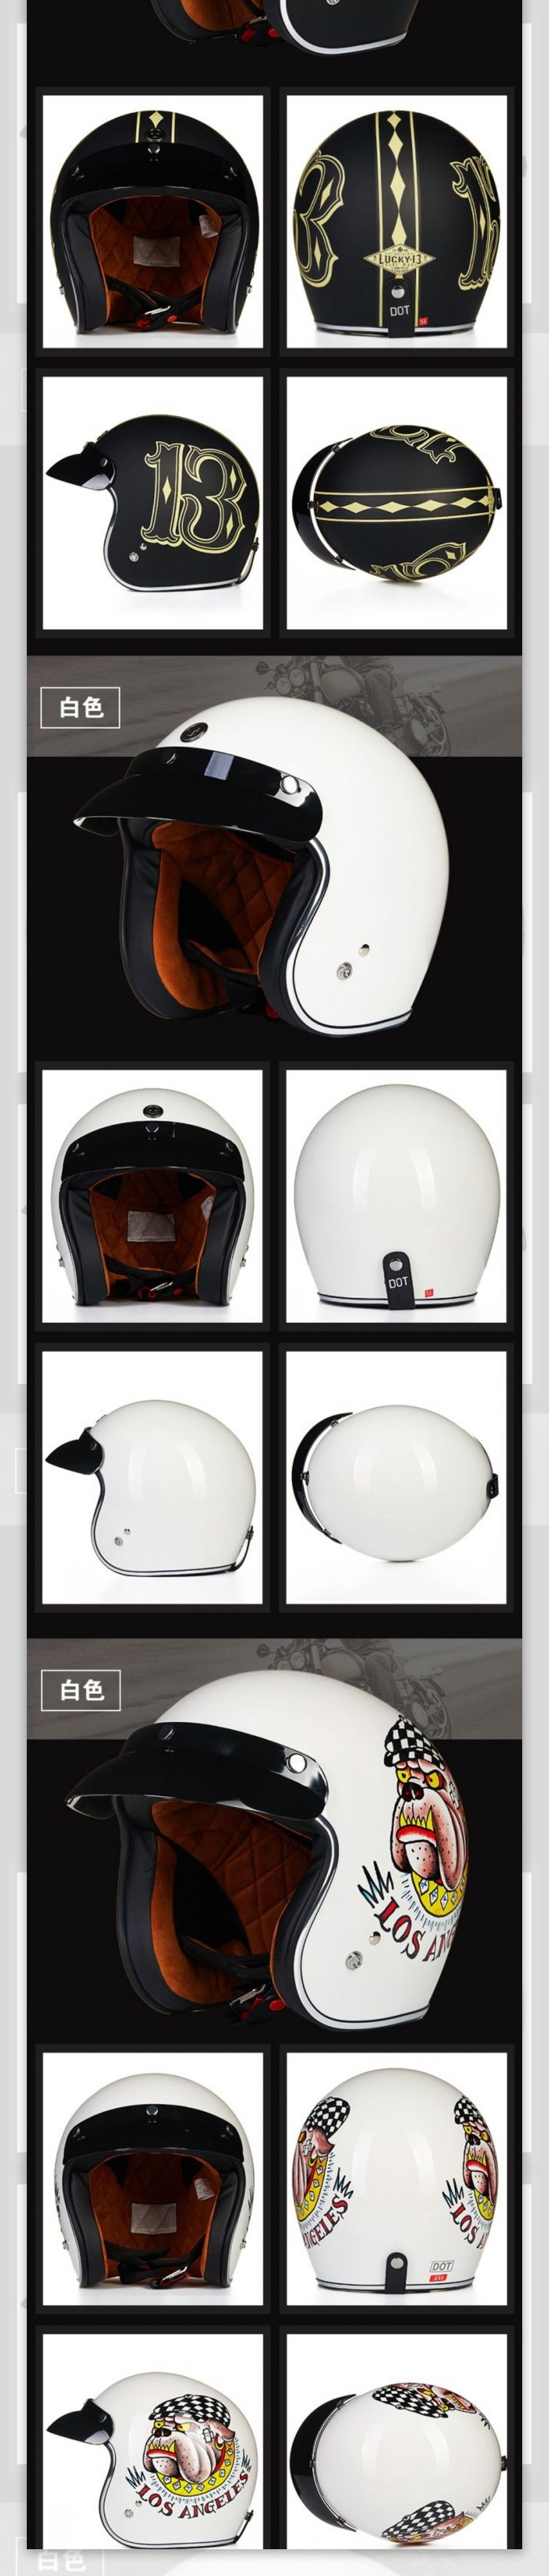 摩托车头盔详情页设计